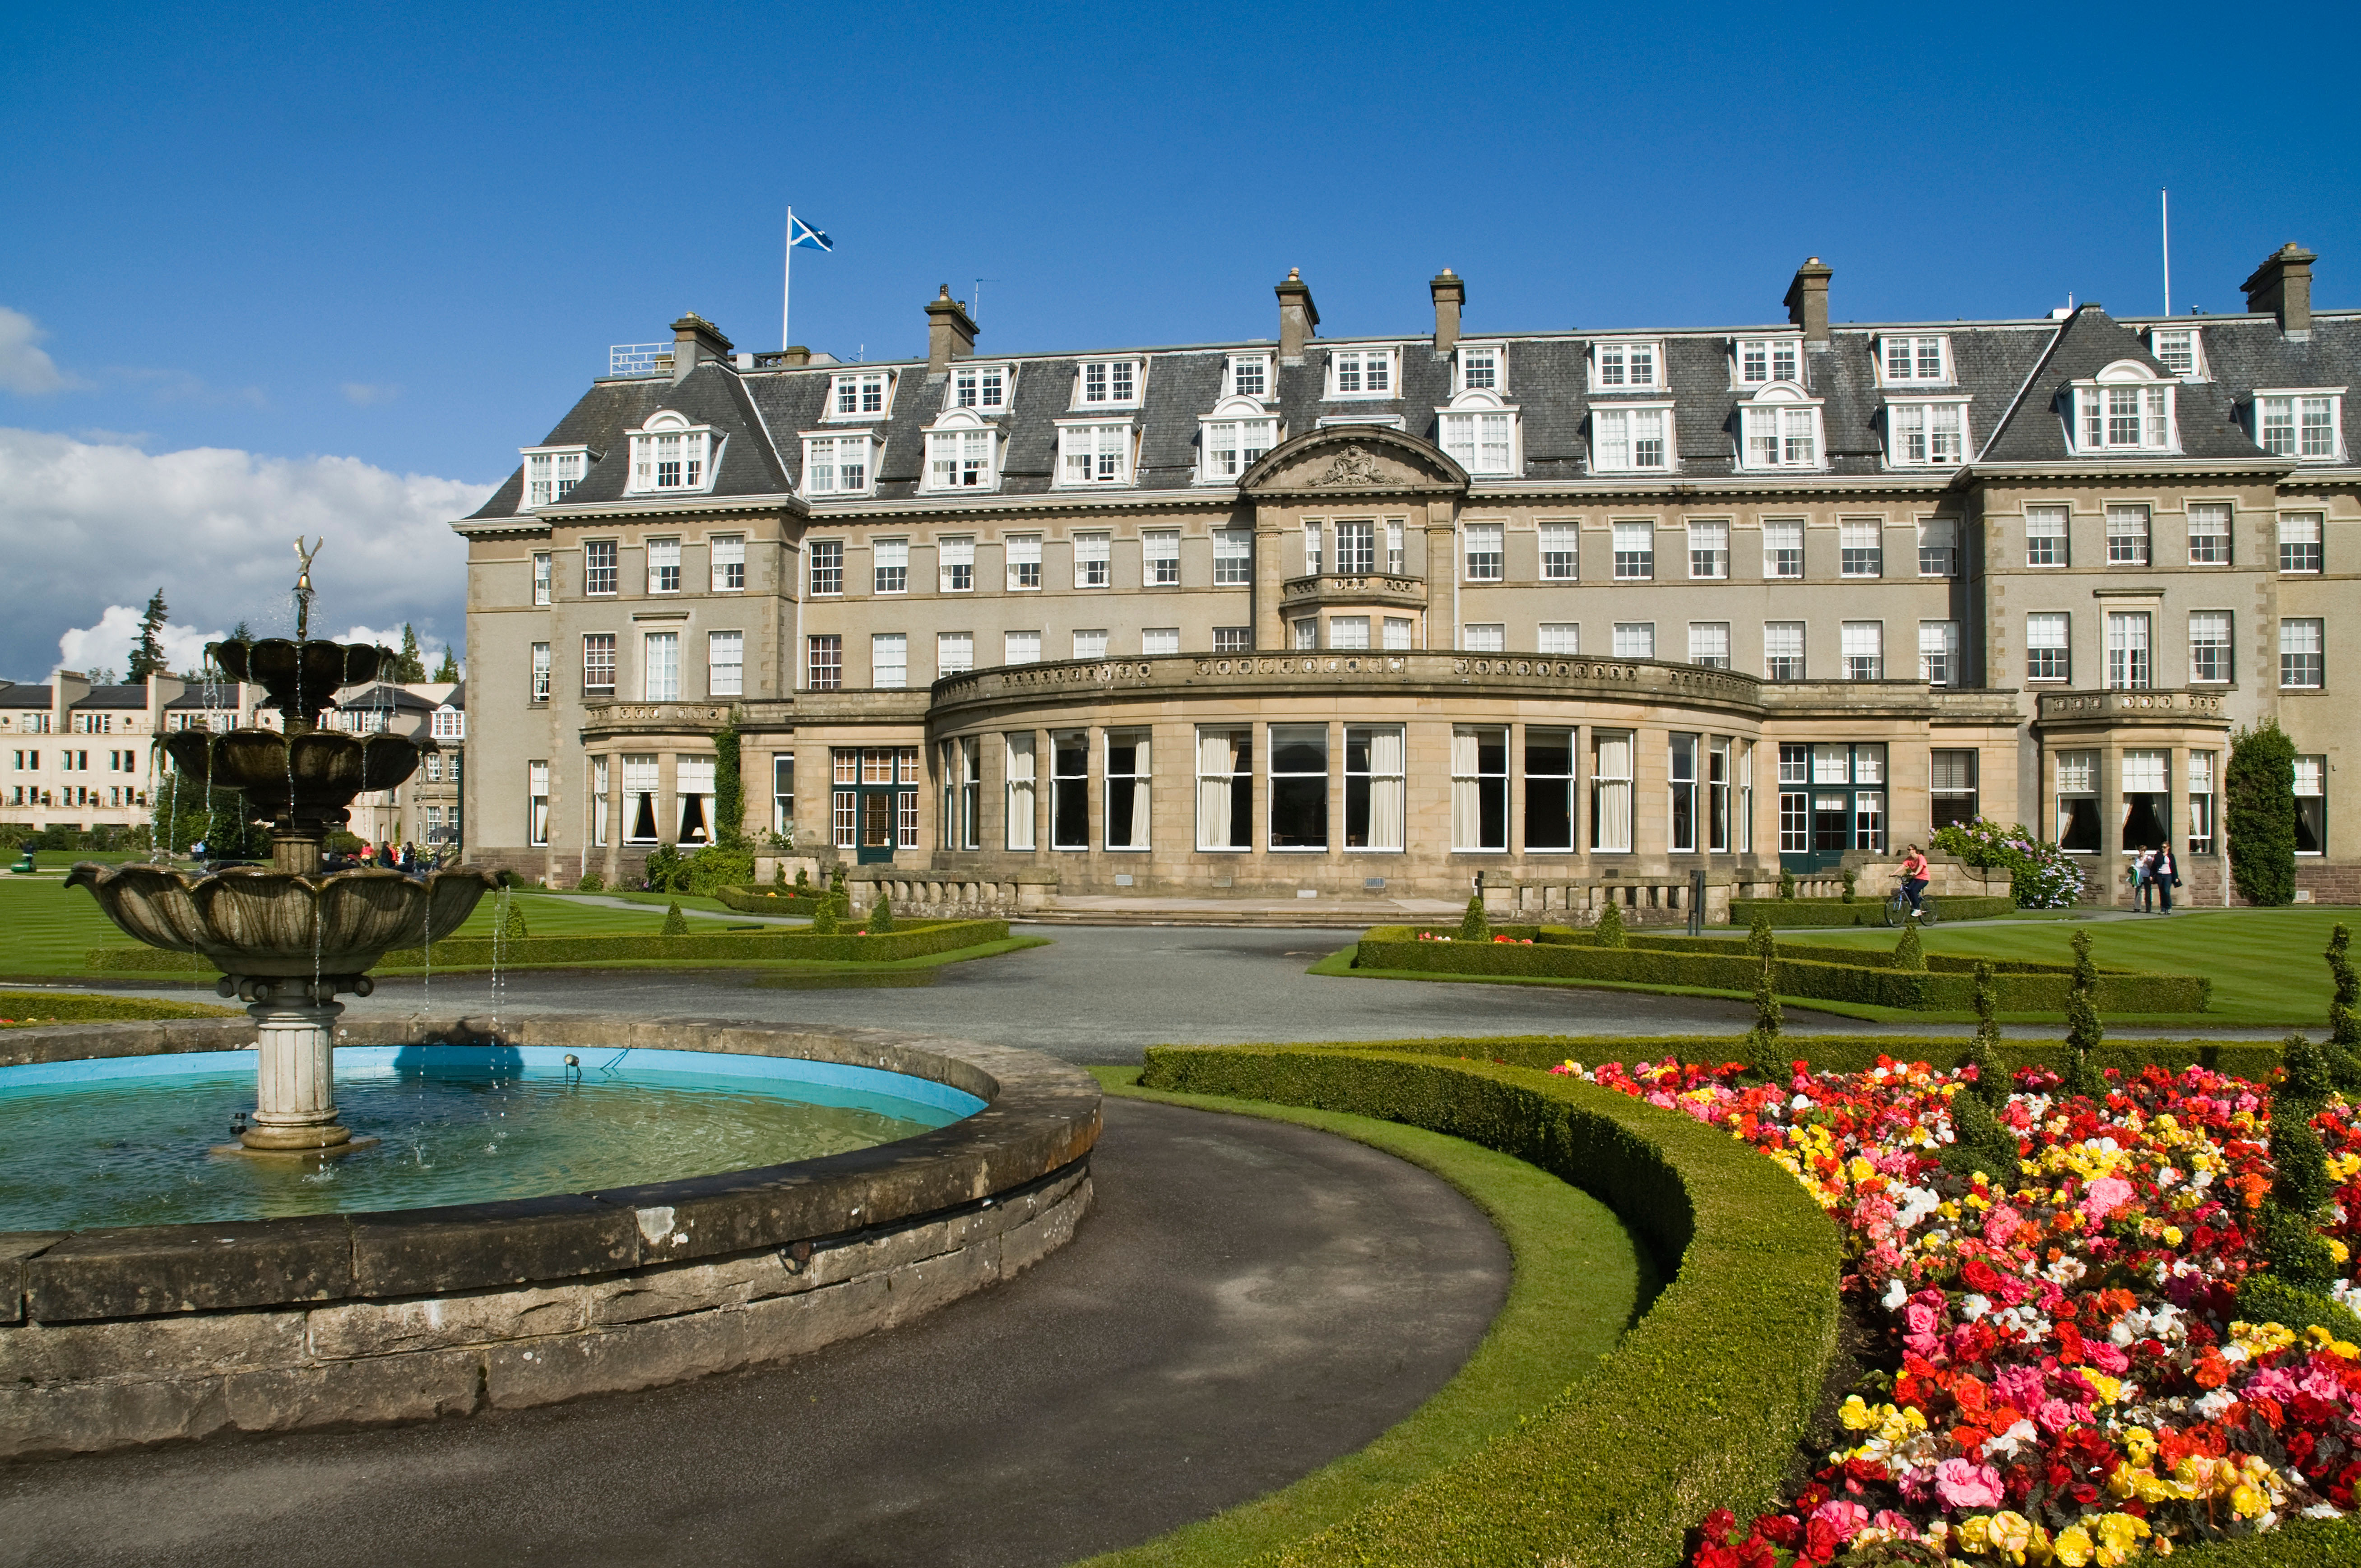 Luxury Hotels in Scotland